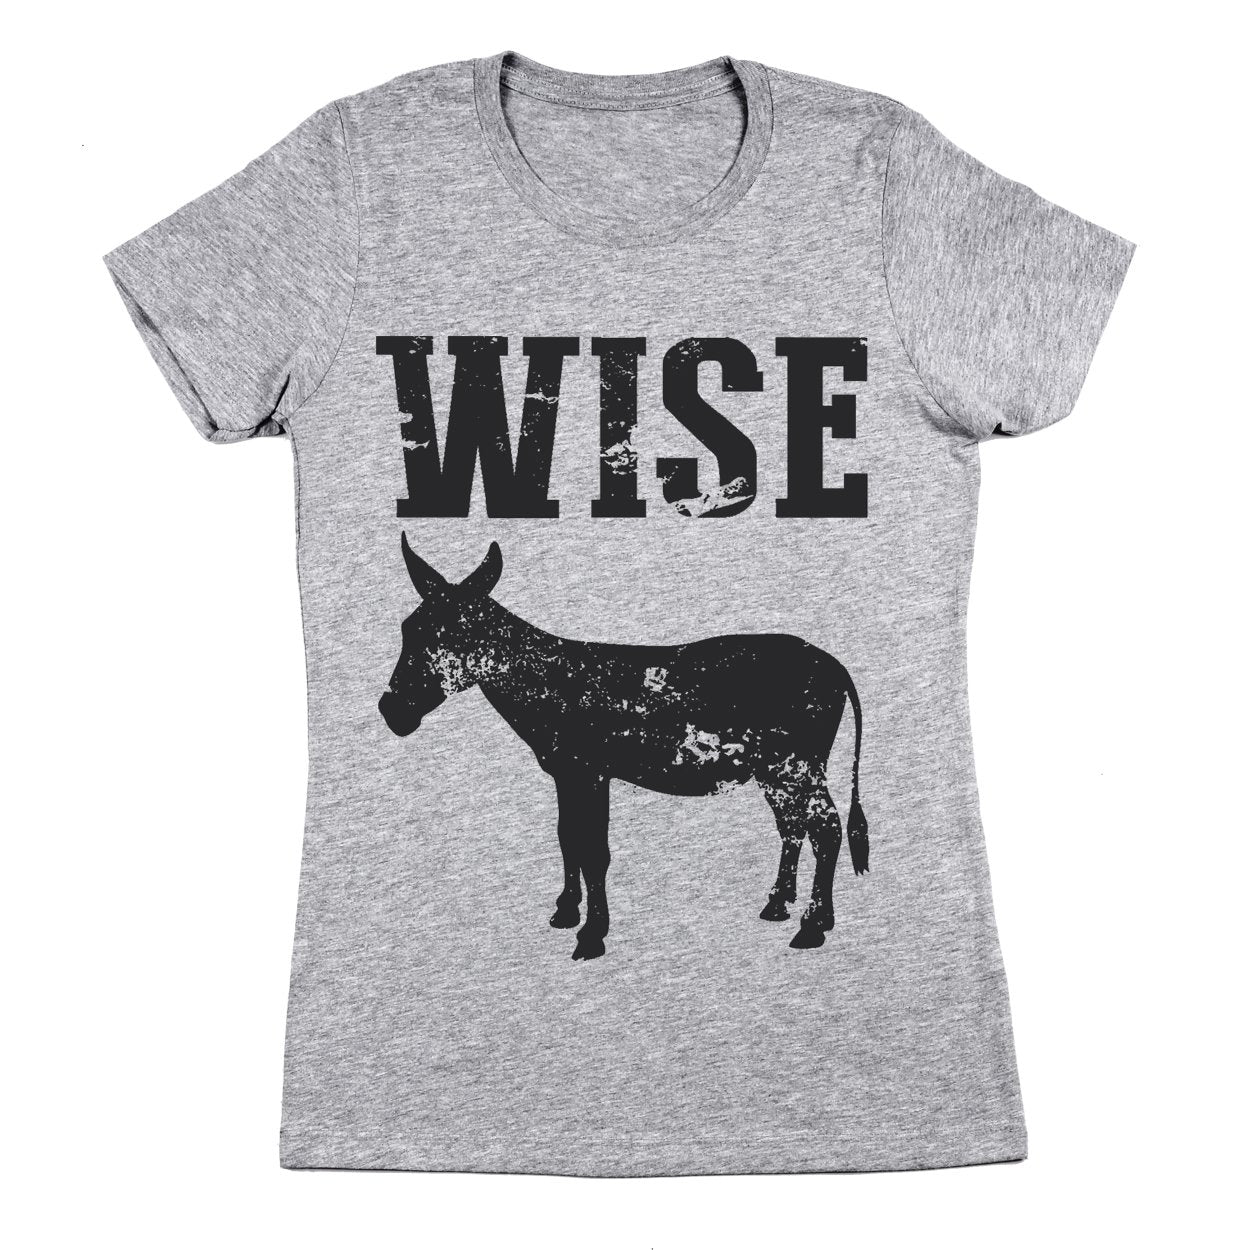 Wise Ass Women's Fit T-Shirt